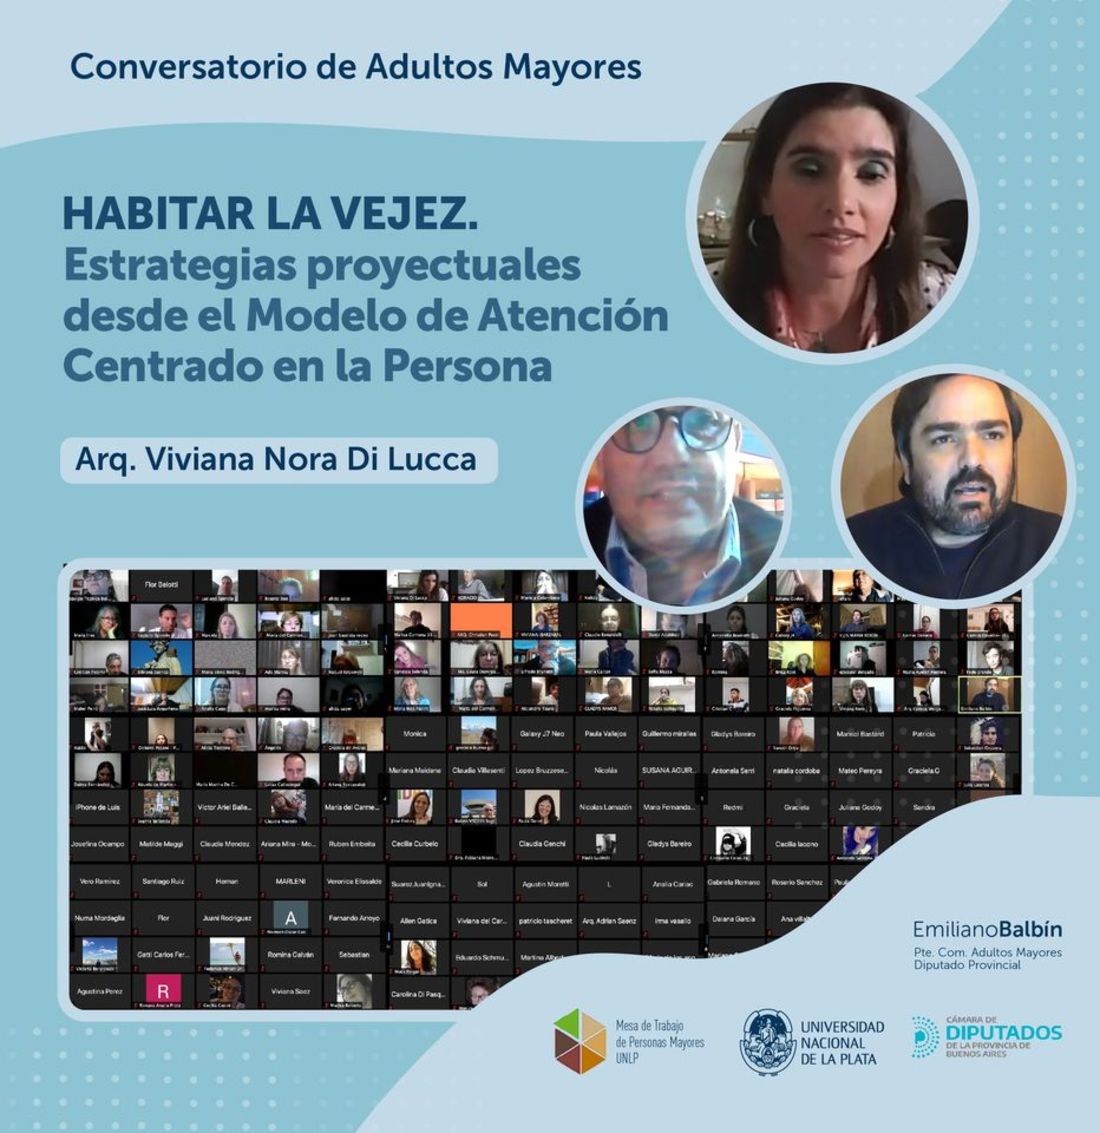 Conversatorio online de Adultos Mayores "Habitar la Vejez”